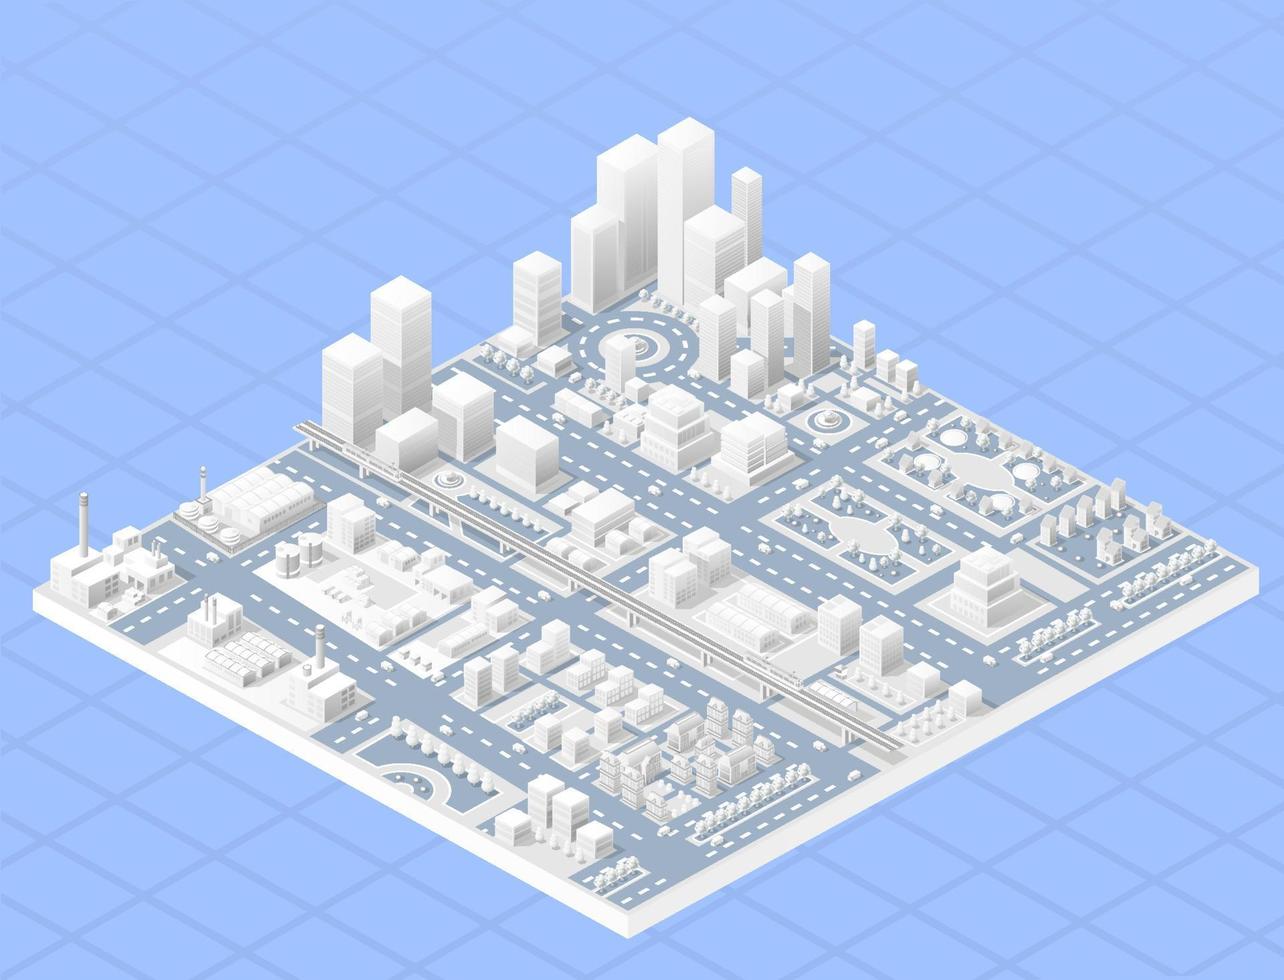 vektor isometrisk centrum av staden på kartan med ett stort antal byggnader, skyskrapor, fabriker, parker och fordon. isometrisk vy av en stor modern stadsaffär.